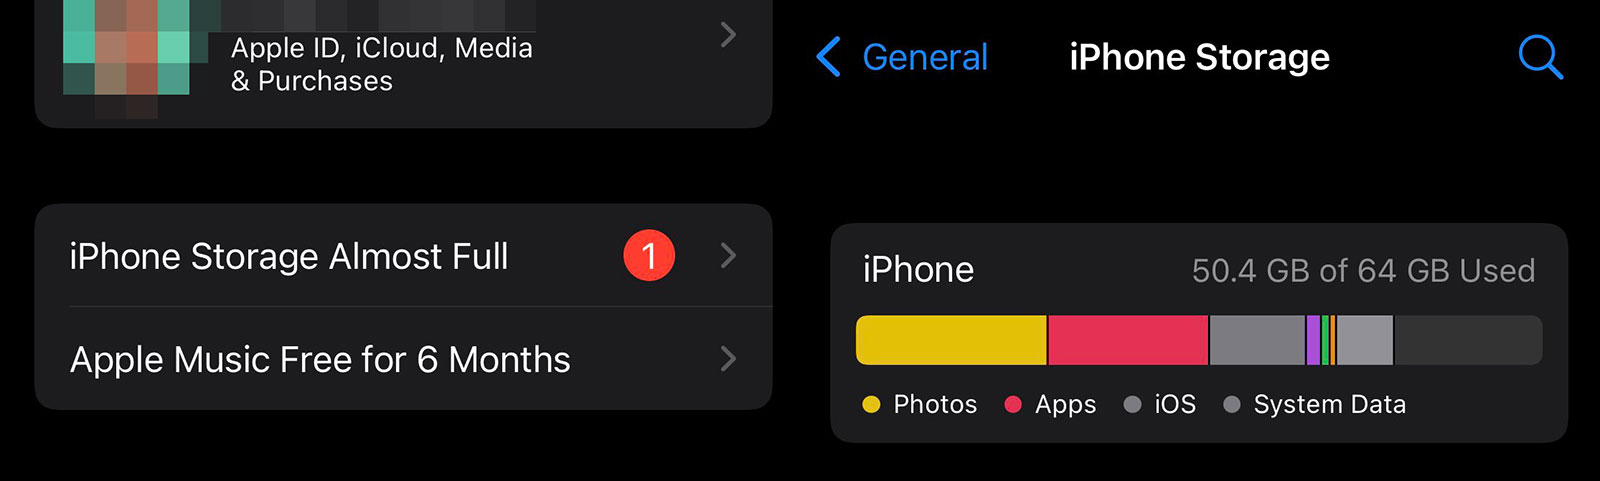 Mensaje de iPhone lleno que resulta no ser cierto, debido a un bug en iOS 15